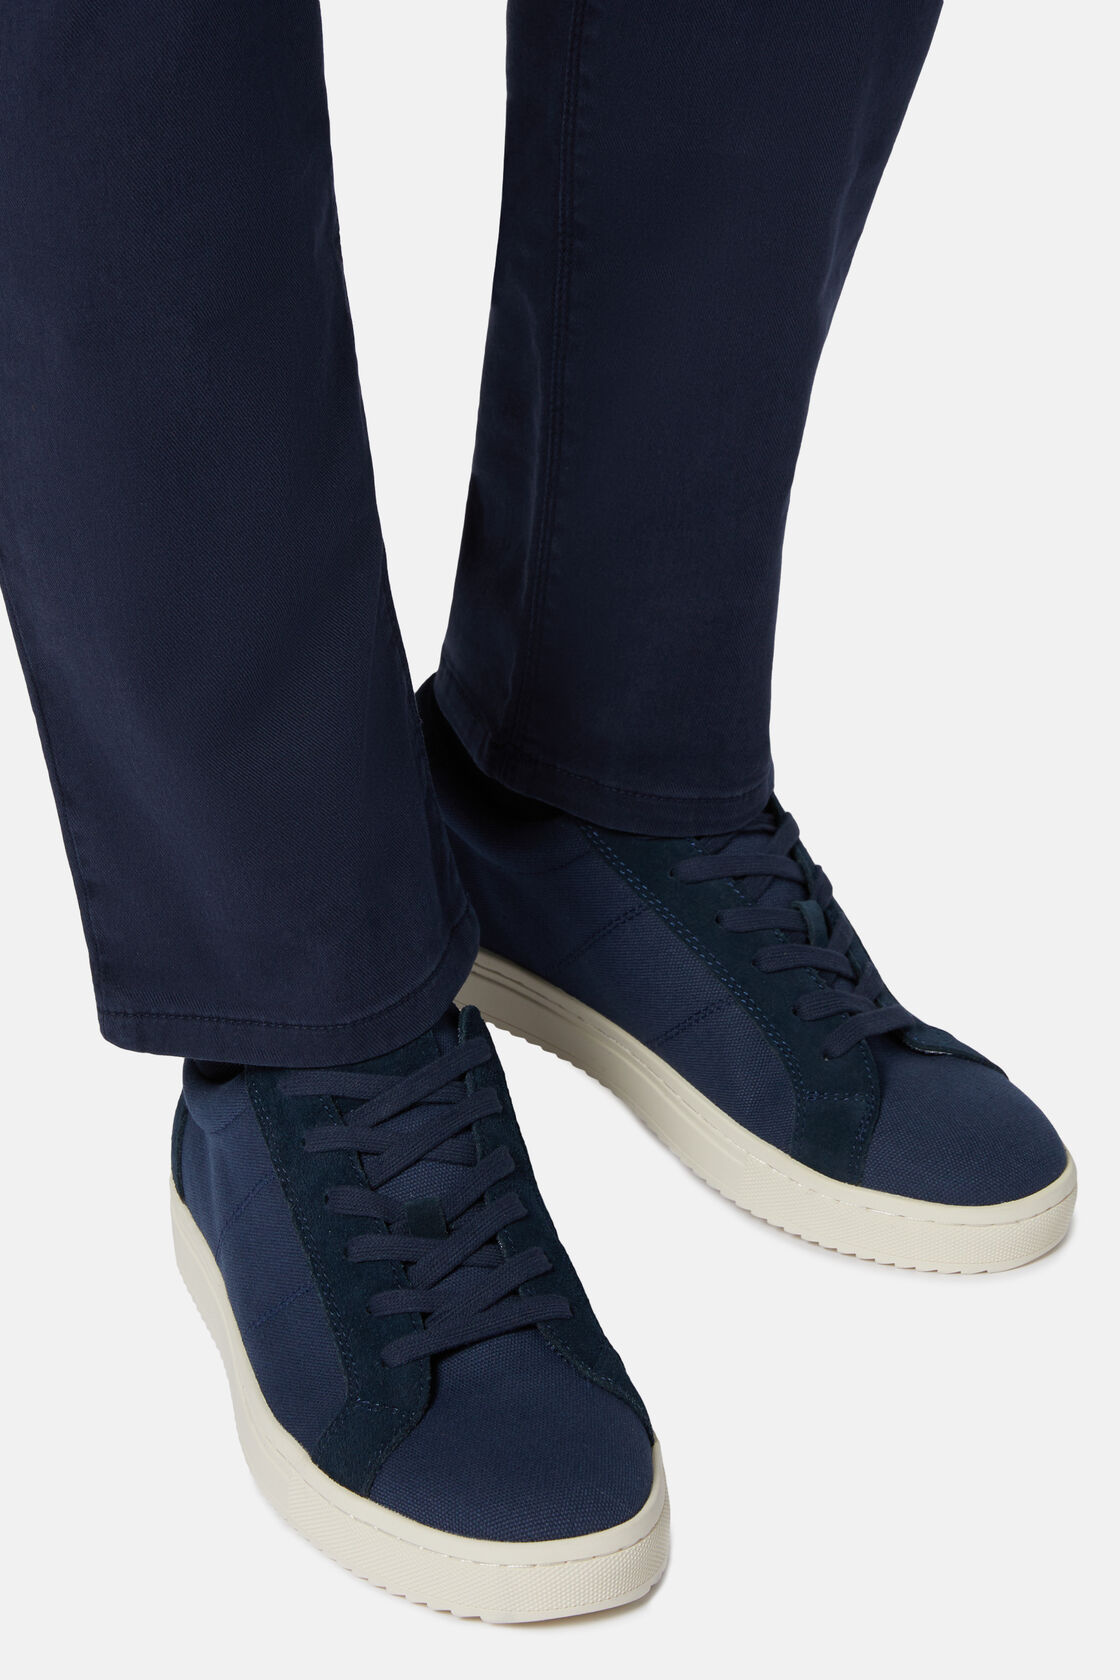 Granatowe buty sportowe z płótna i zamszu., Navy blue, hi-res